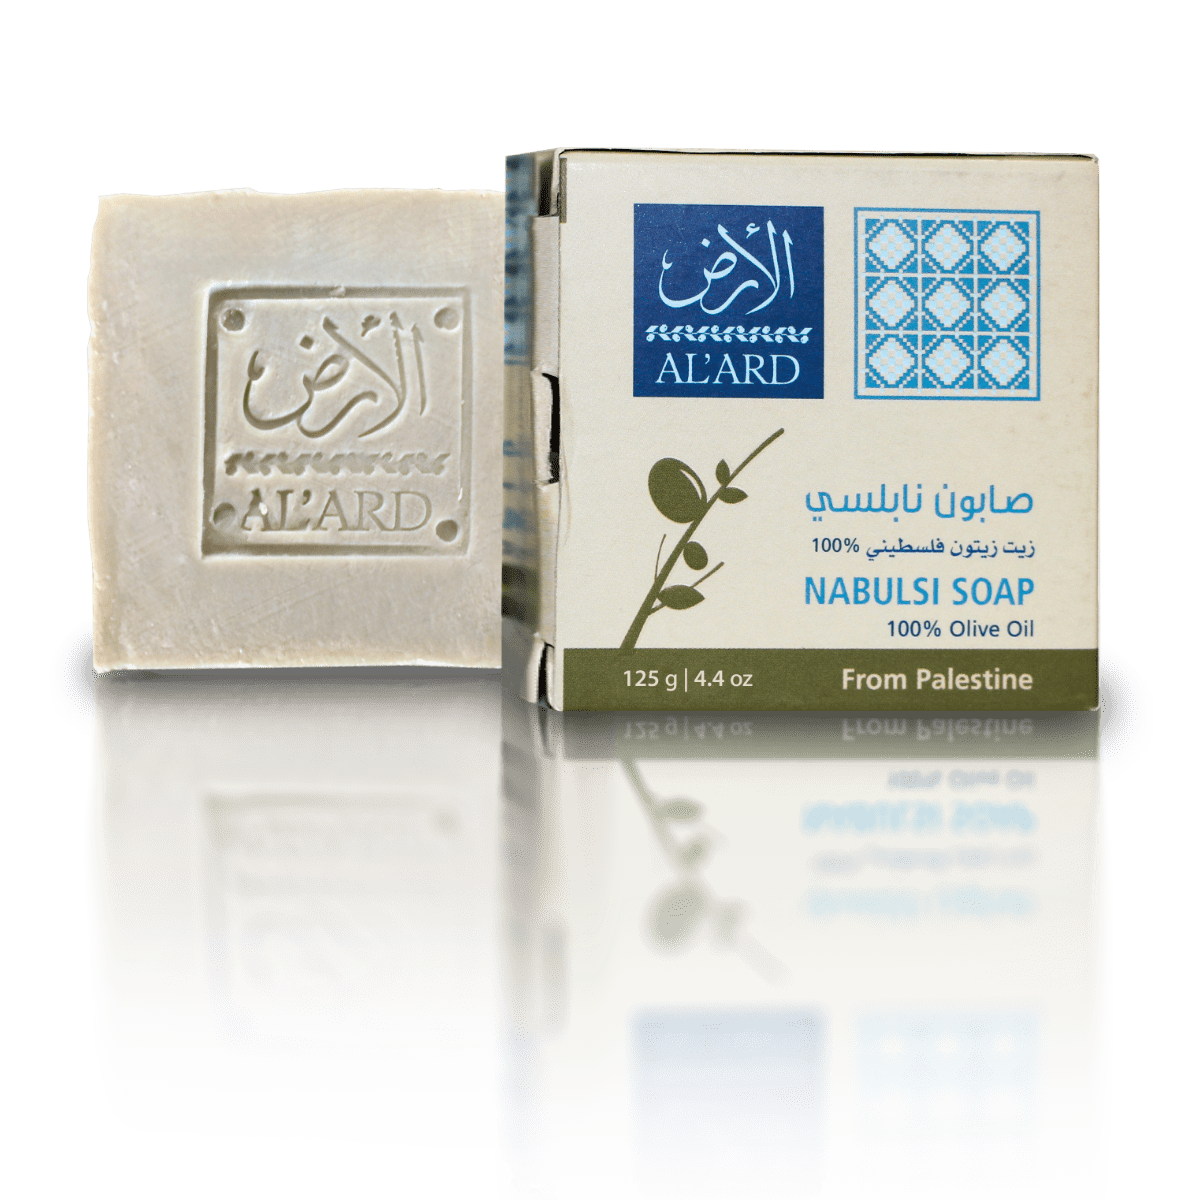 Al'ard Palestinian Agri-Product Ltd. Premium Nabulsi Soap - 125g/4.4oz